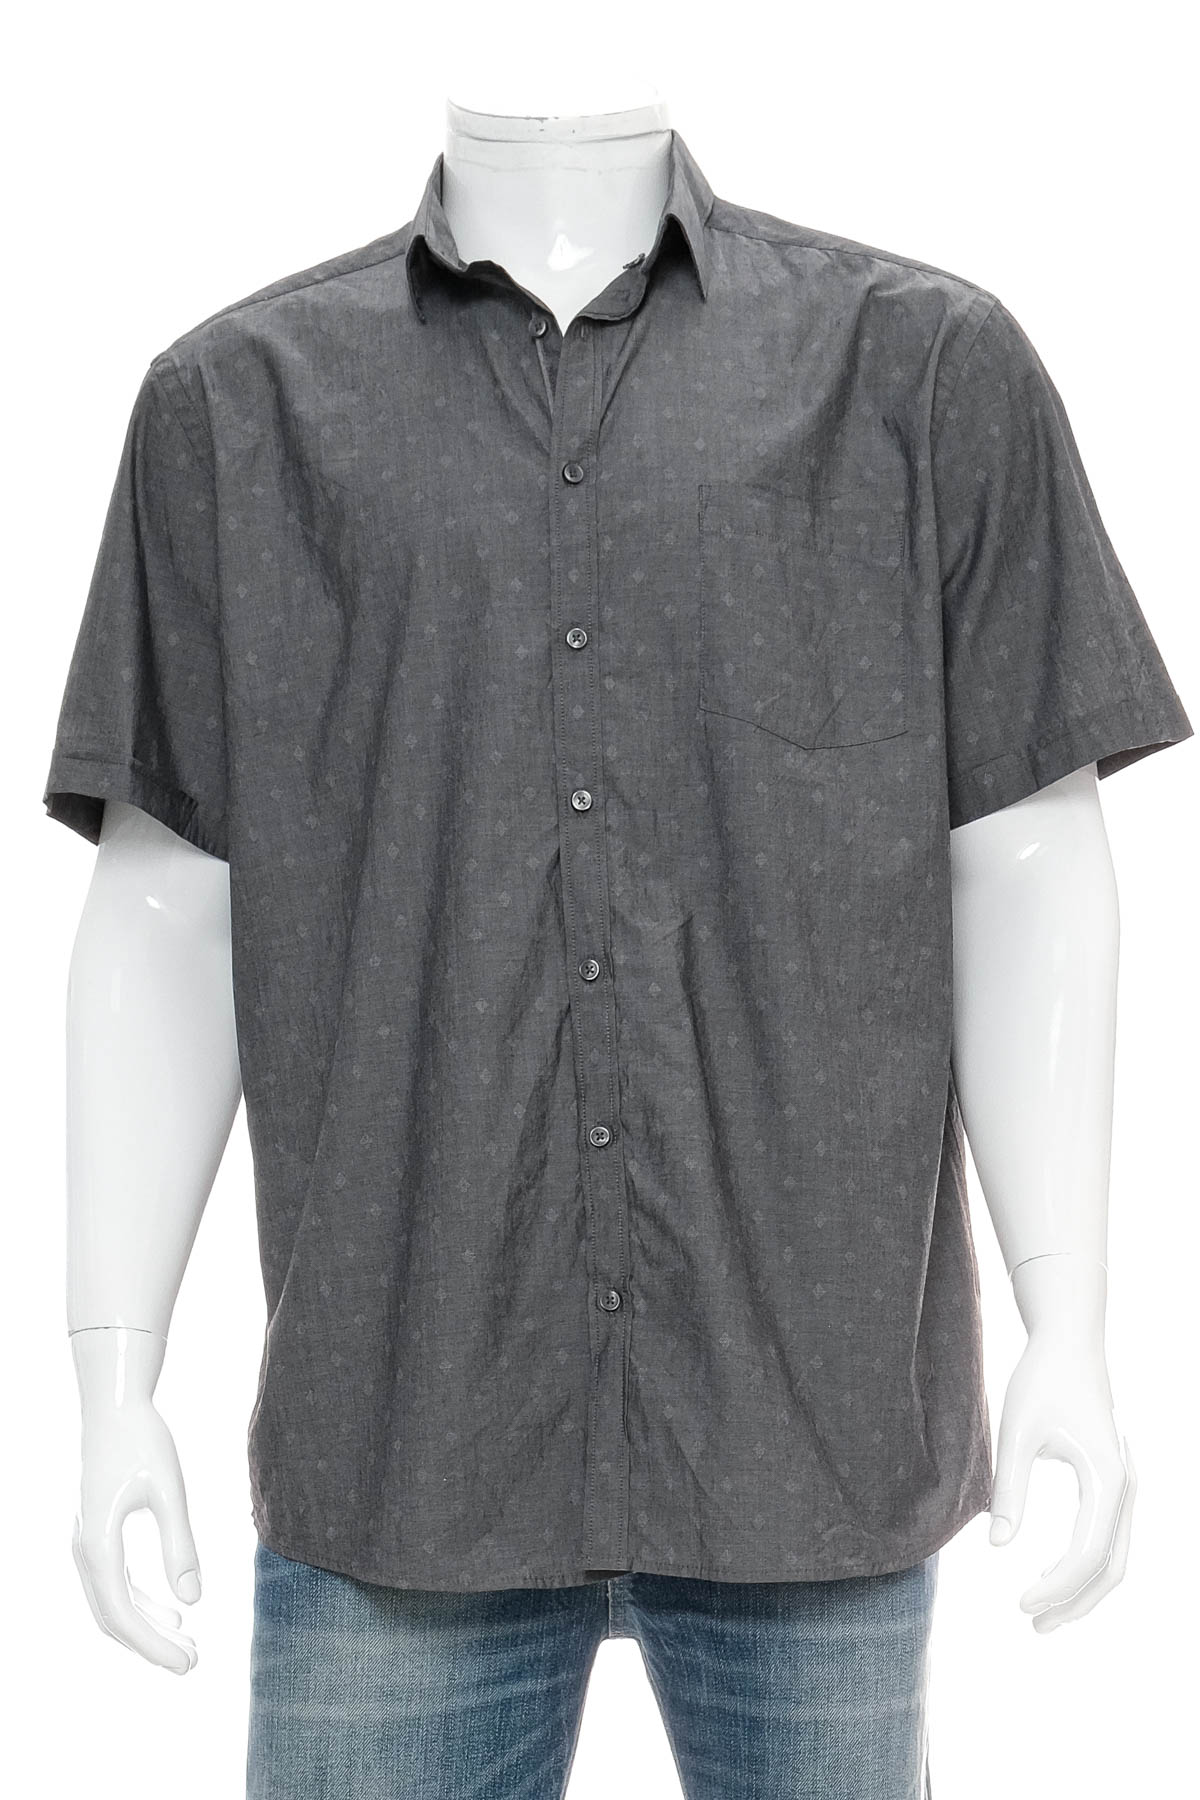 Ανδρικό πουκάμισο - Target - 0